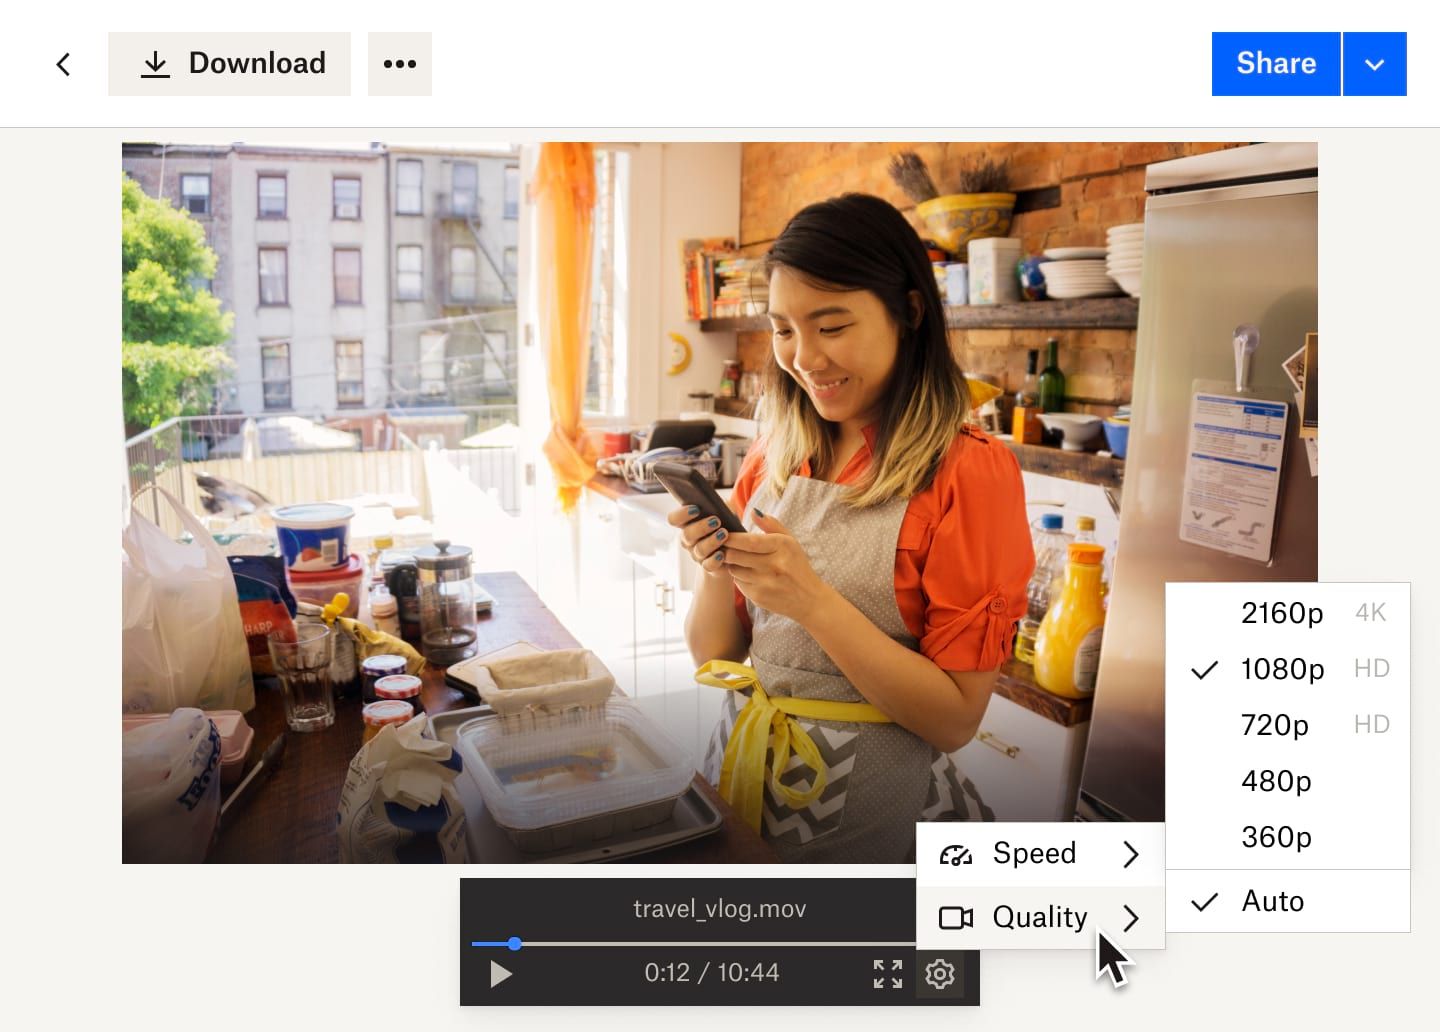 Menu déroulant du bouton « Paramètres » illustrant les options de vitesse et de qualité vidéo d’un fichier vidéo Dropbox montrant une femme qui travaille dans une boulangerie